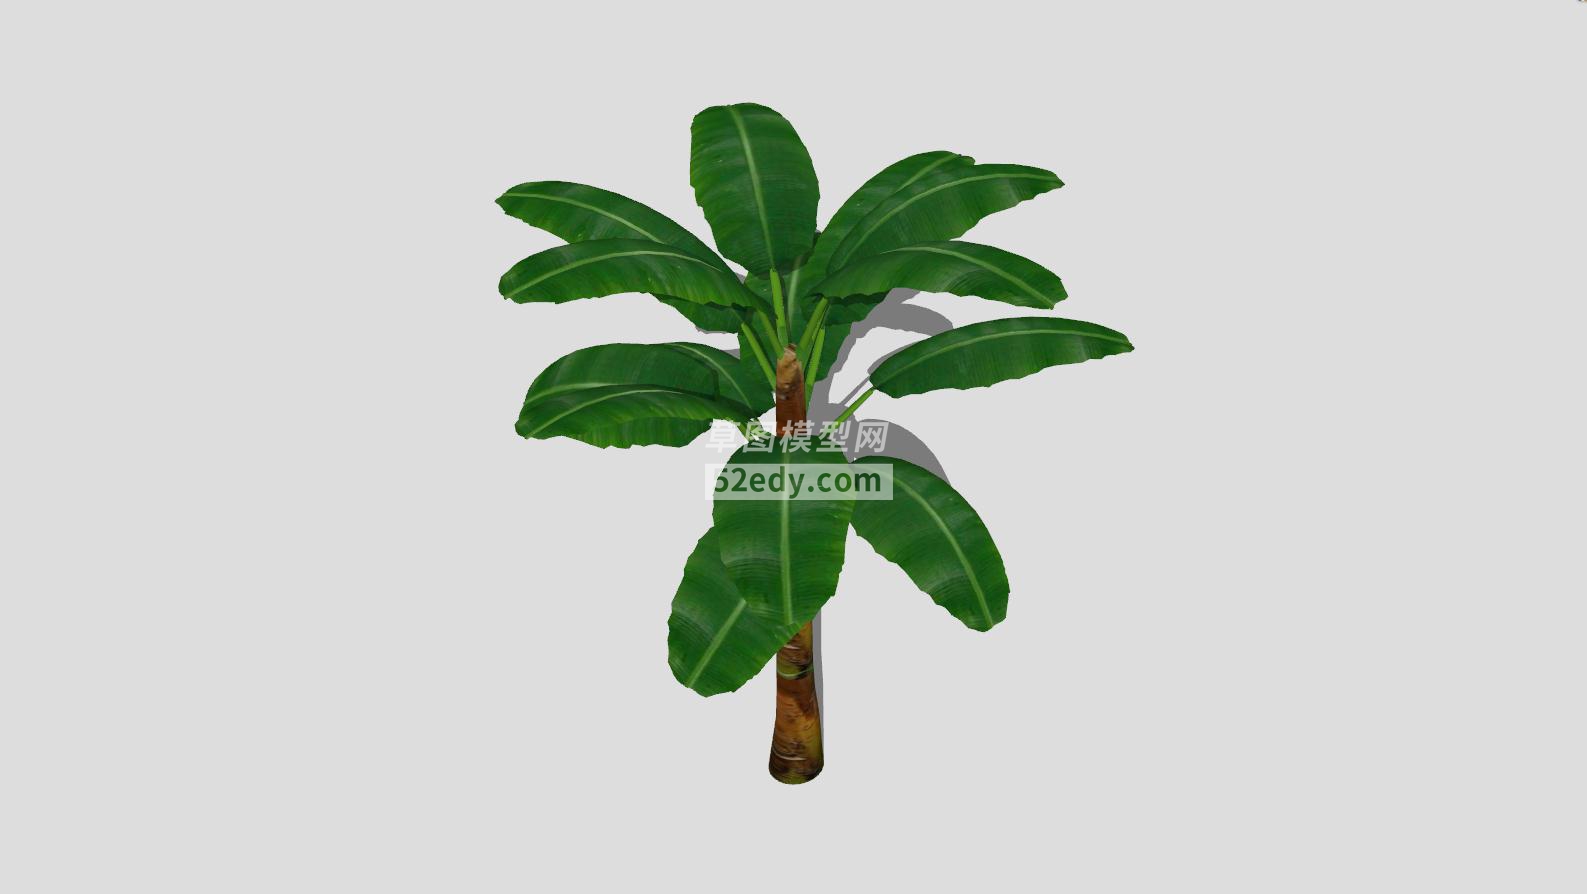 草本植物芭蕉树SU模型QQ浏览器截图20190605091936(3)